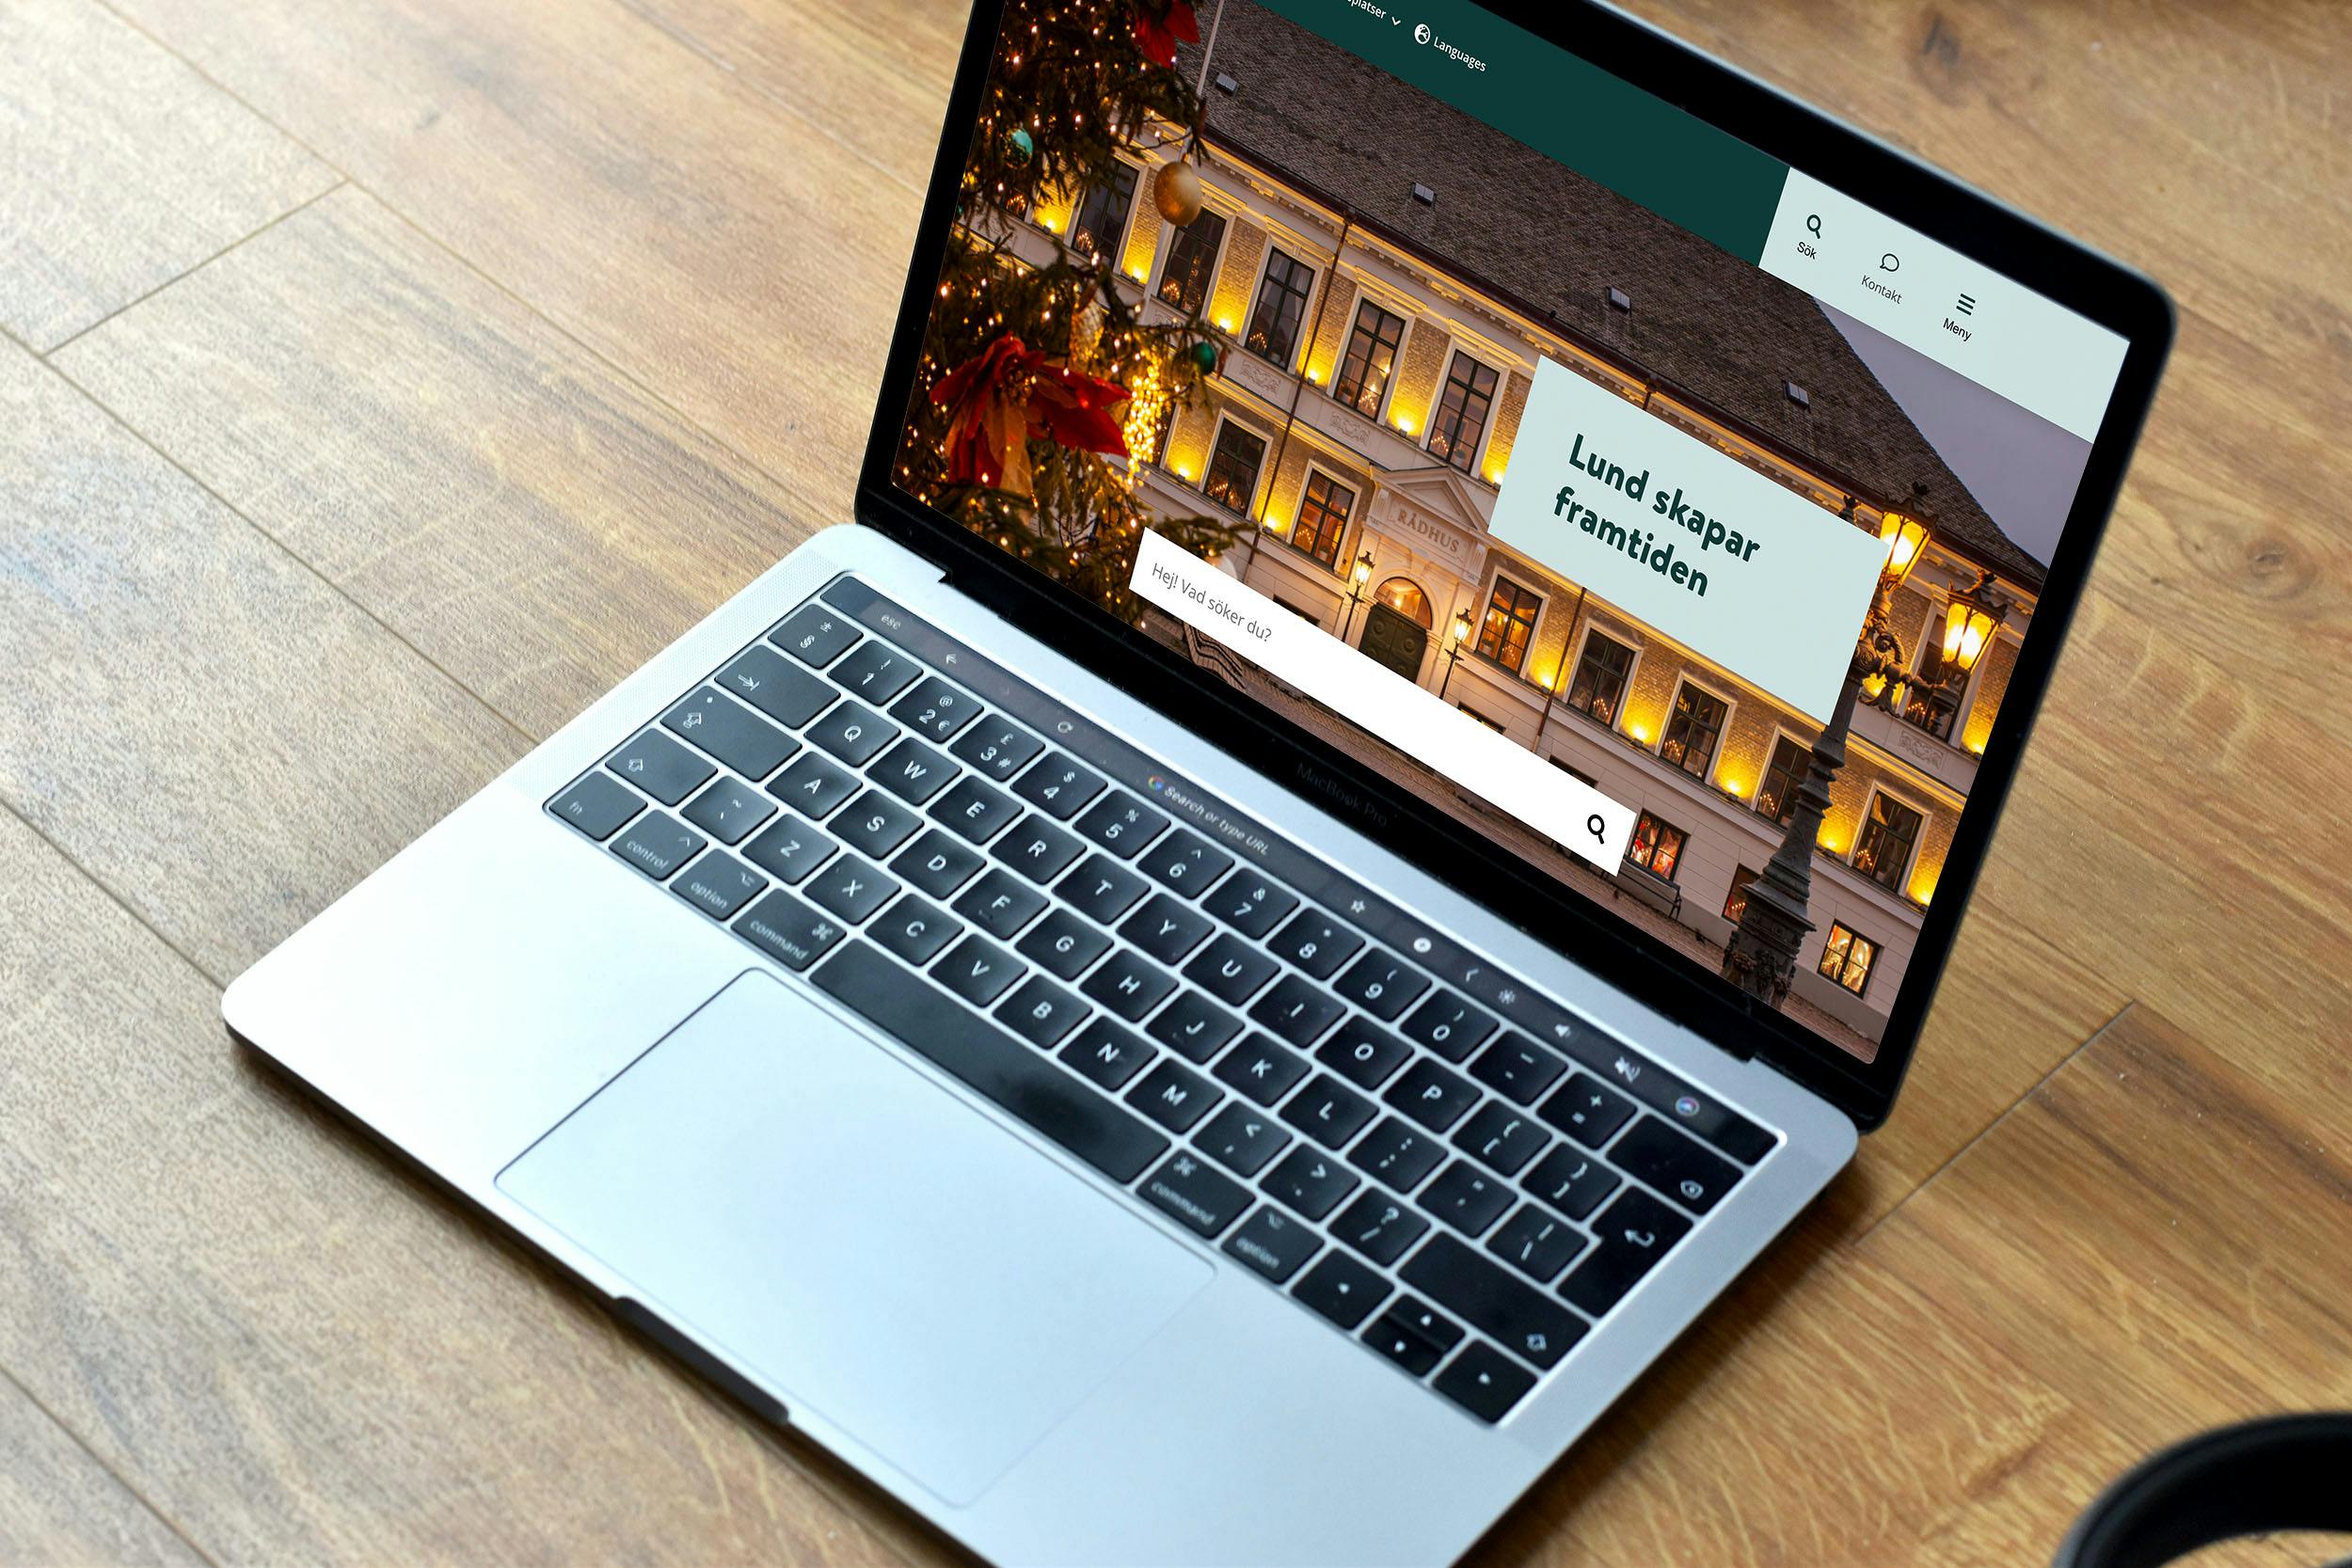 Lund kommuns nya webbplats utvecklad av Consid, i en MacBook Pro på ett underlag i trä